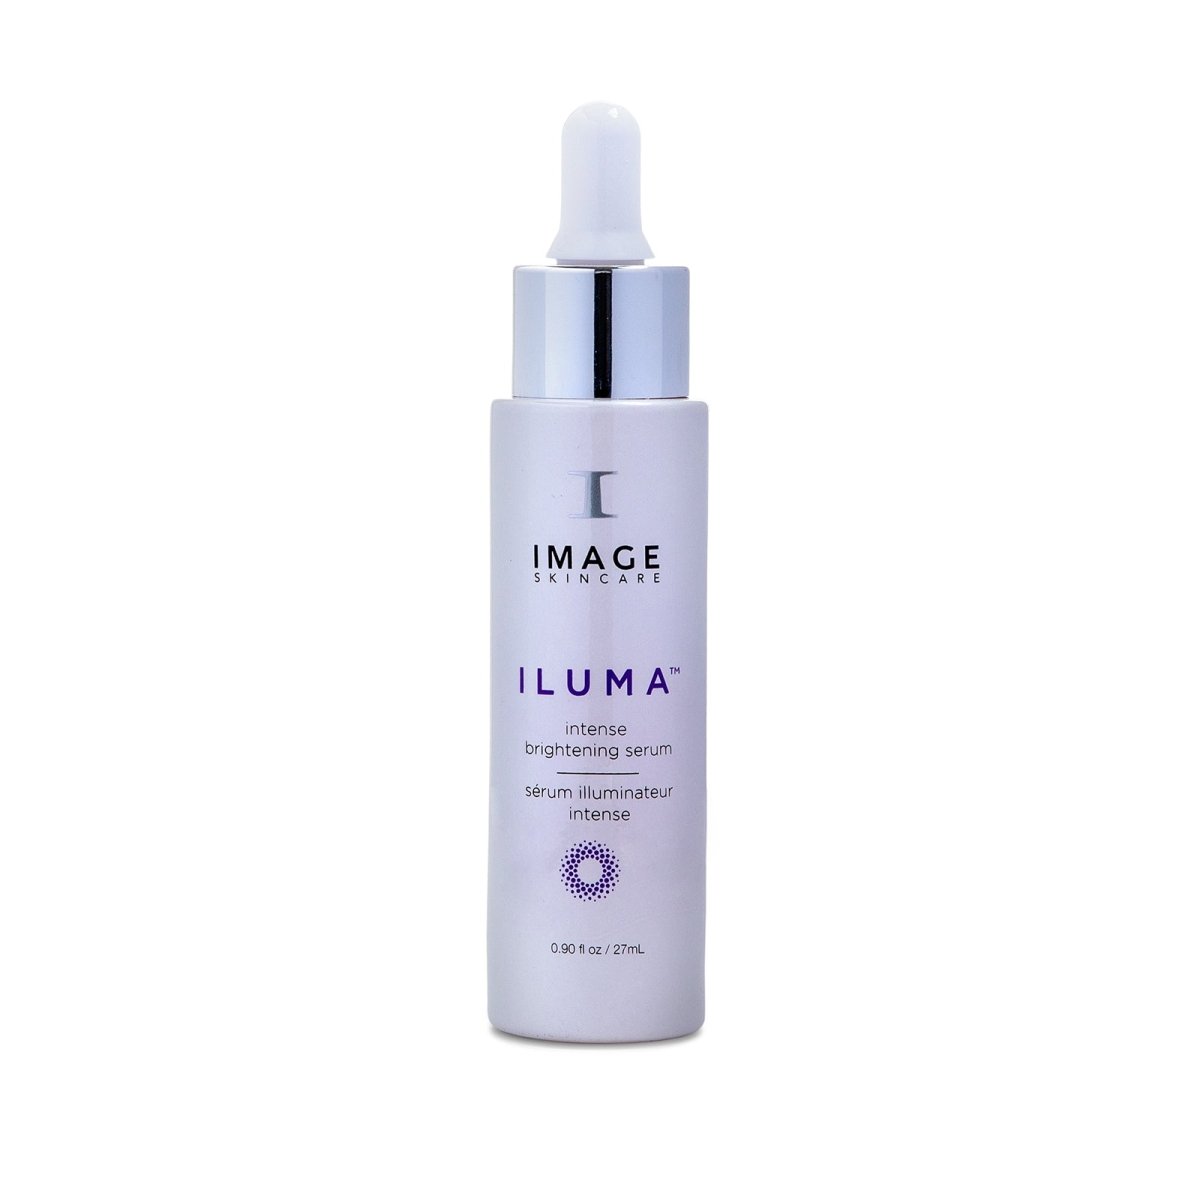 IMAGE Skincare ILUMA® Intense Brightening Serum - SkincareEssentials